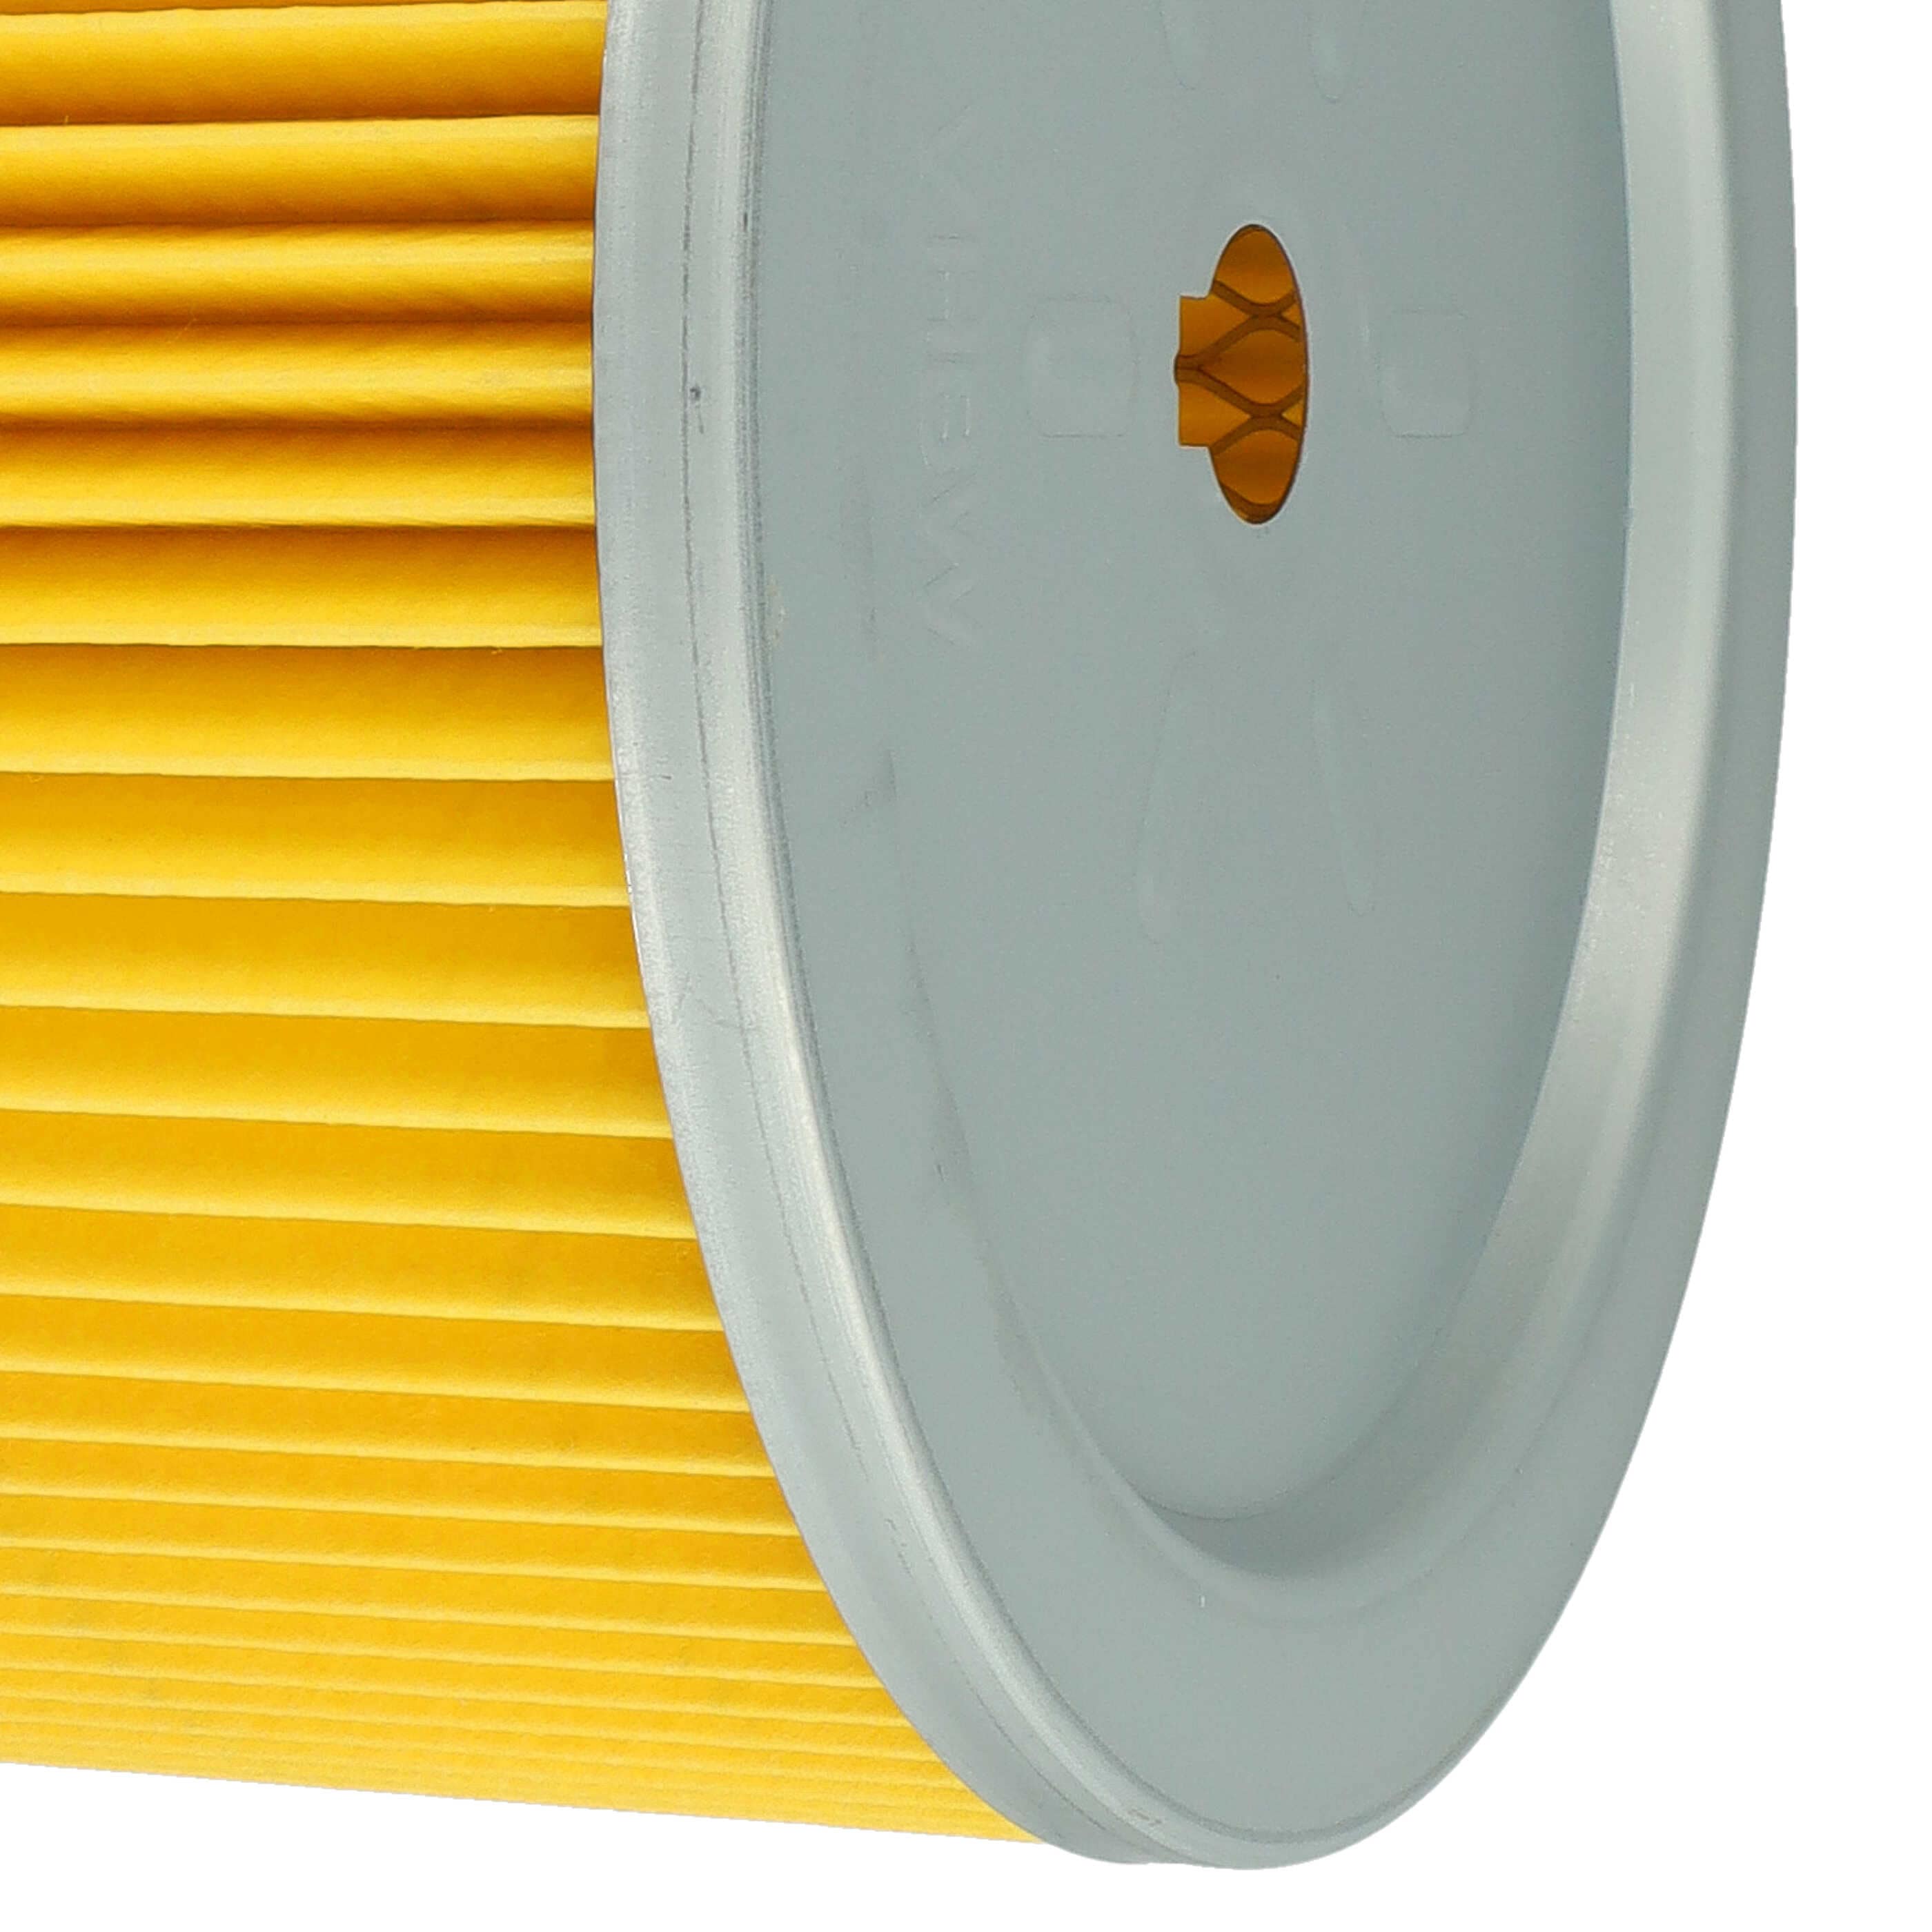 Filtr do odkurzacza Bosch zamiennik Bosch 2607432001 - filtr fałdowany, czarny / srebrny / żółty